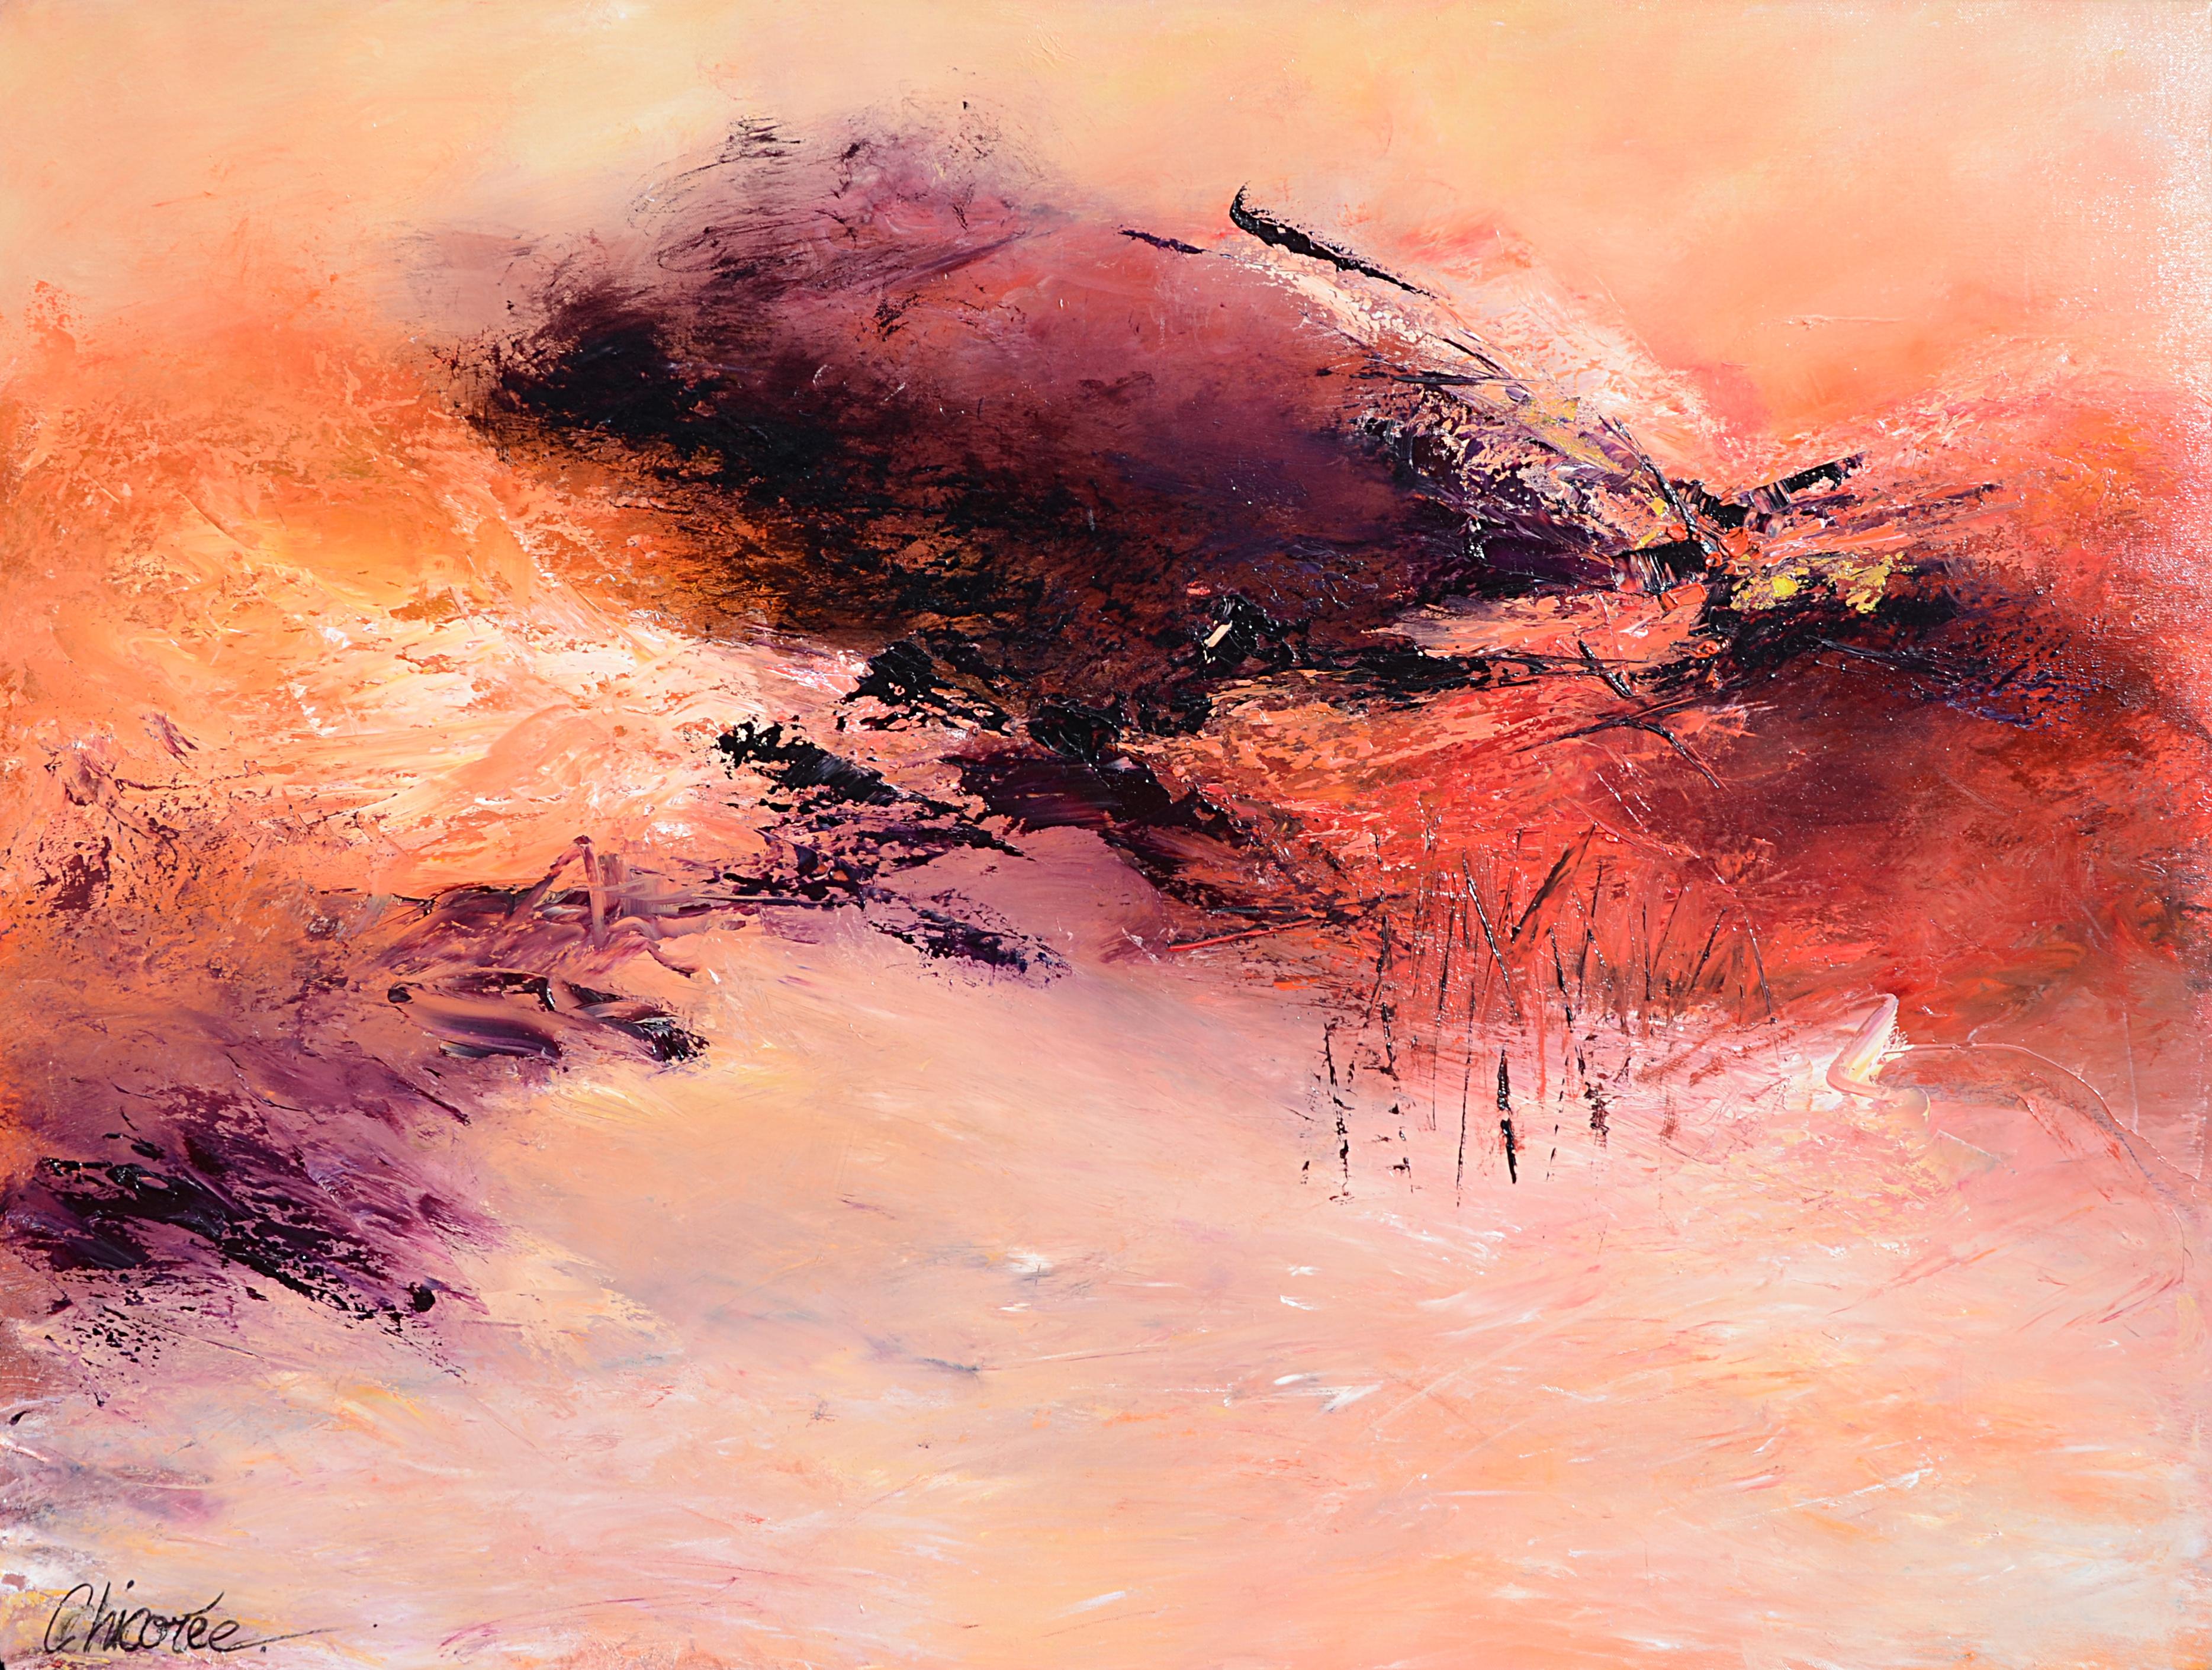 Chicorée Landscape Painting - "Mount Carmel", Large Abstract Landscape Oil Painting